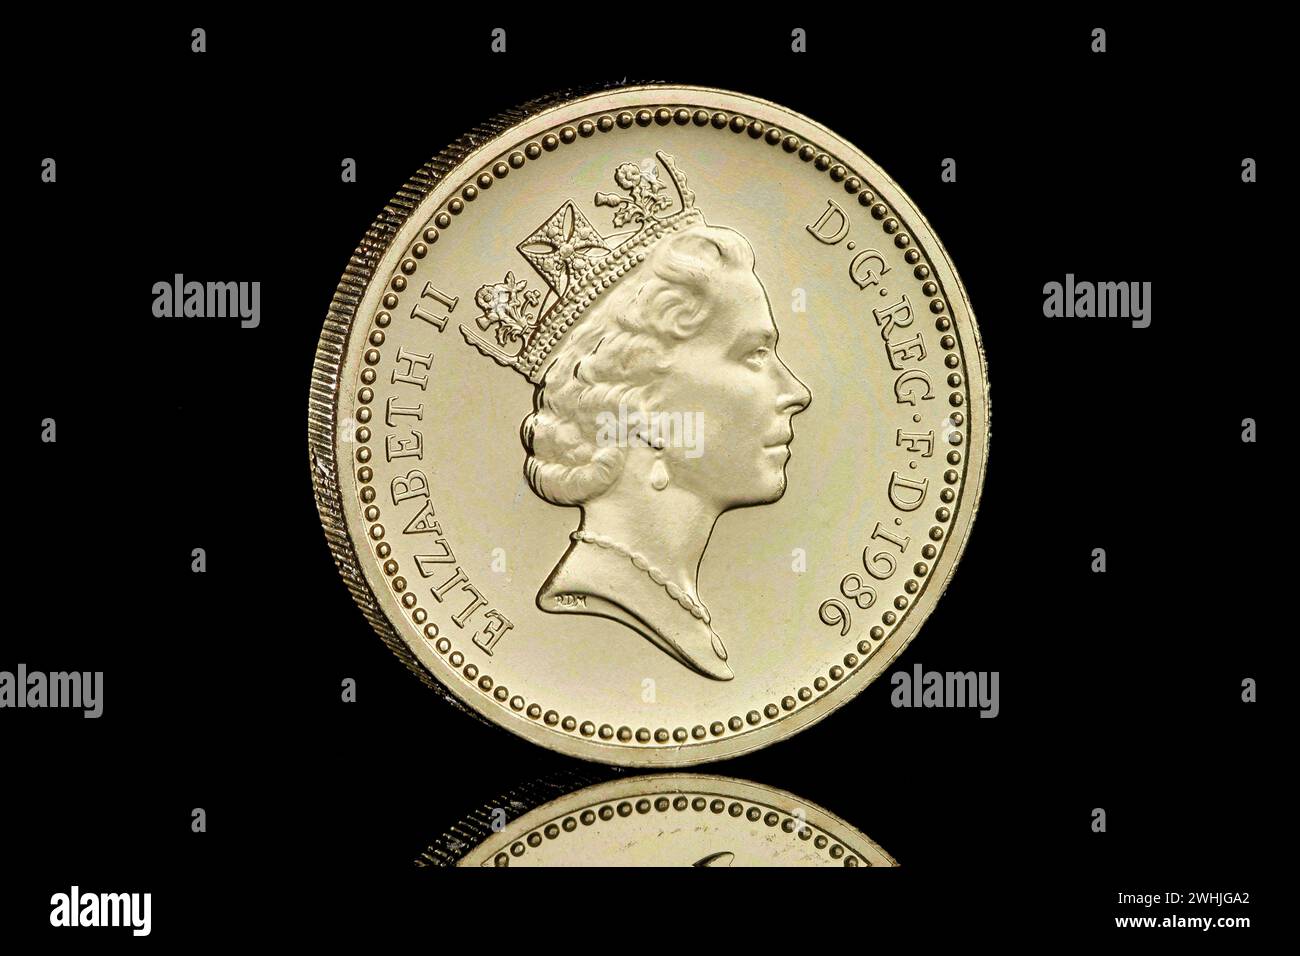 1986 Regno Unito £ 1 moneta. Il retro mostra un lino dell'Irlanda del Nord in una coronetta, di Leslie Durbin, il dritto mostra la regina Elisabetta II Foto Stock